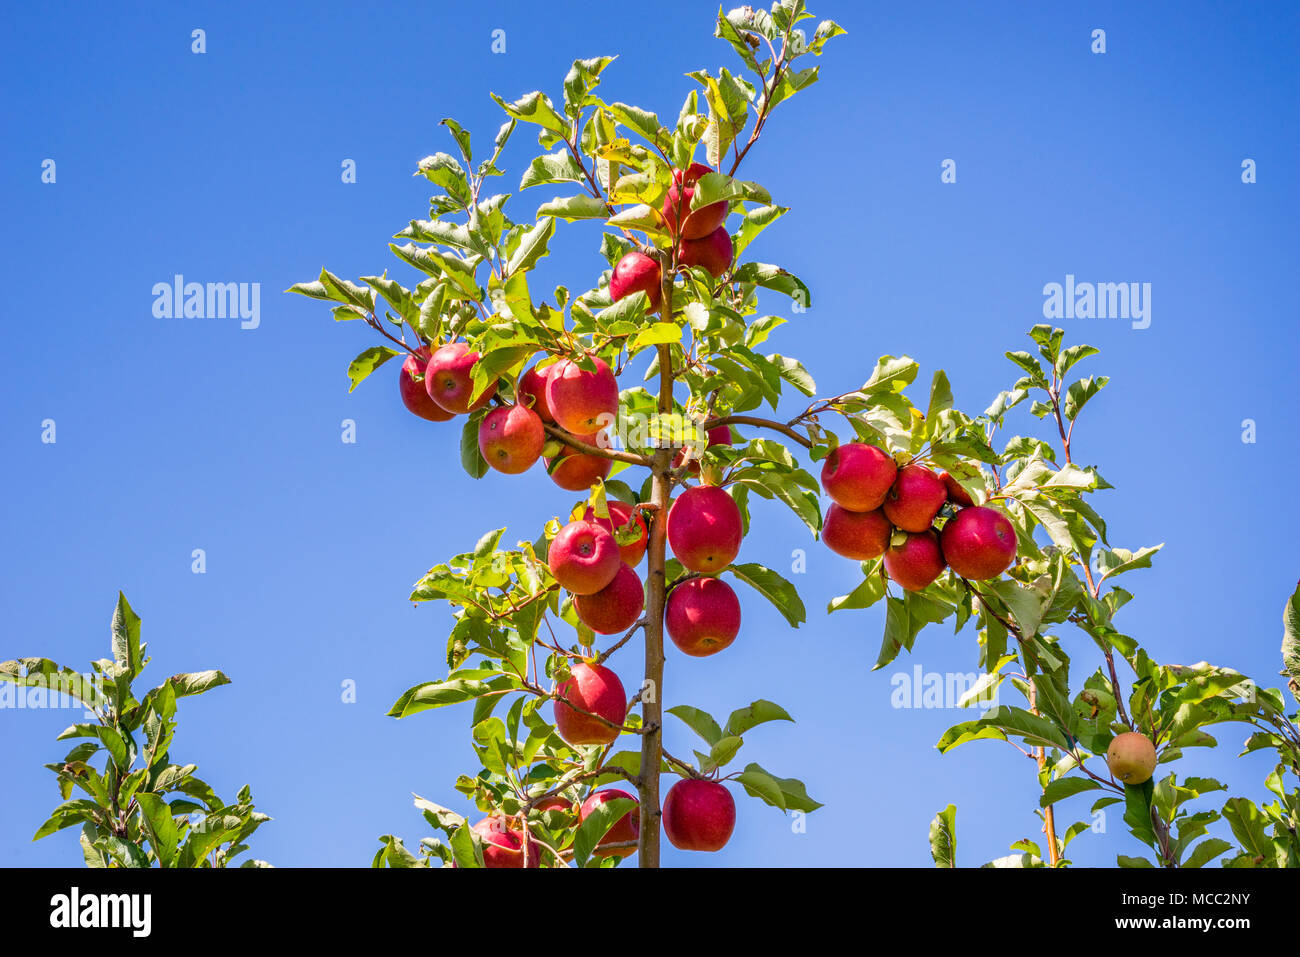 Fruto ladden manzanos poco antes de la cosecha en los huertos, Nashdale Thornbrooks cerca de Orange, en la zona centro-oeste de Nueva Gales del Sur, Australia Foto de stock